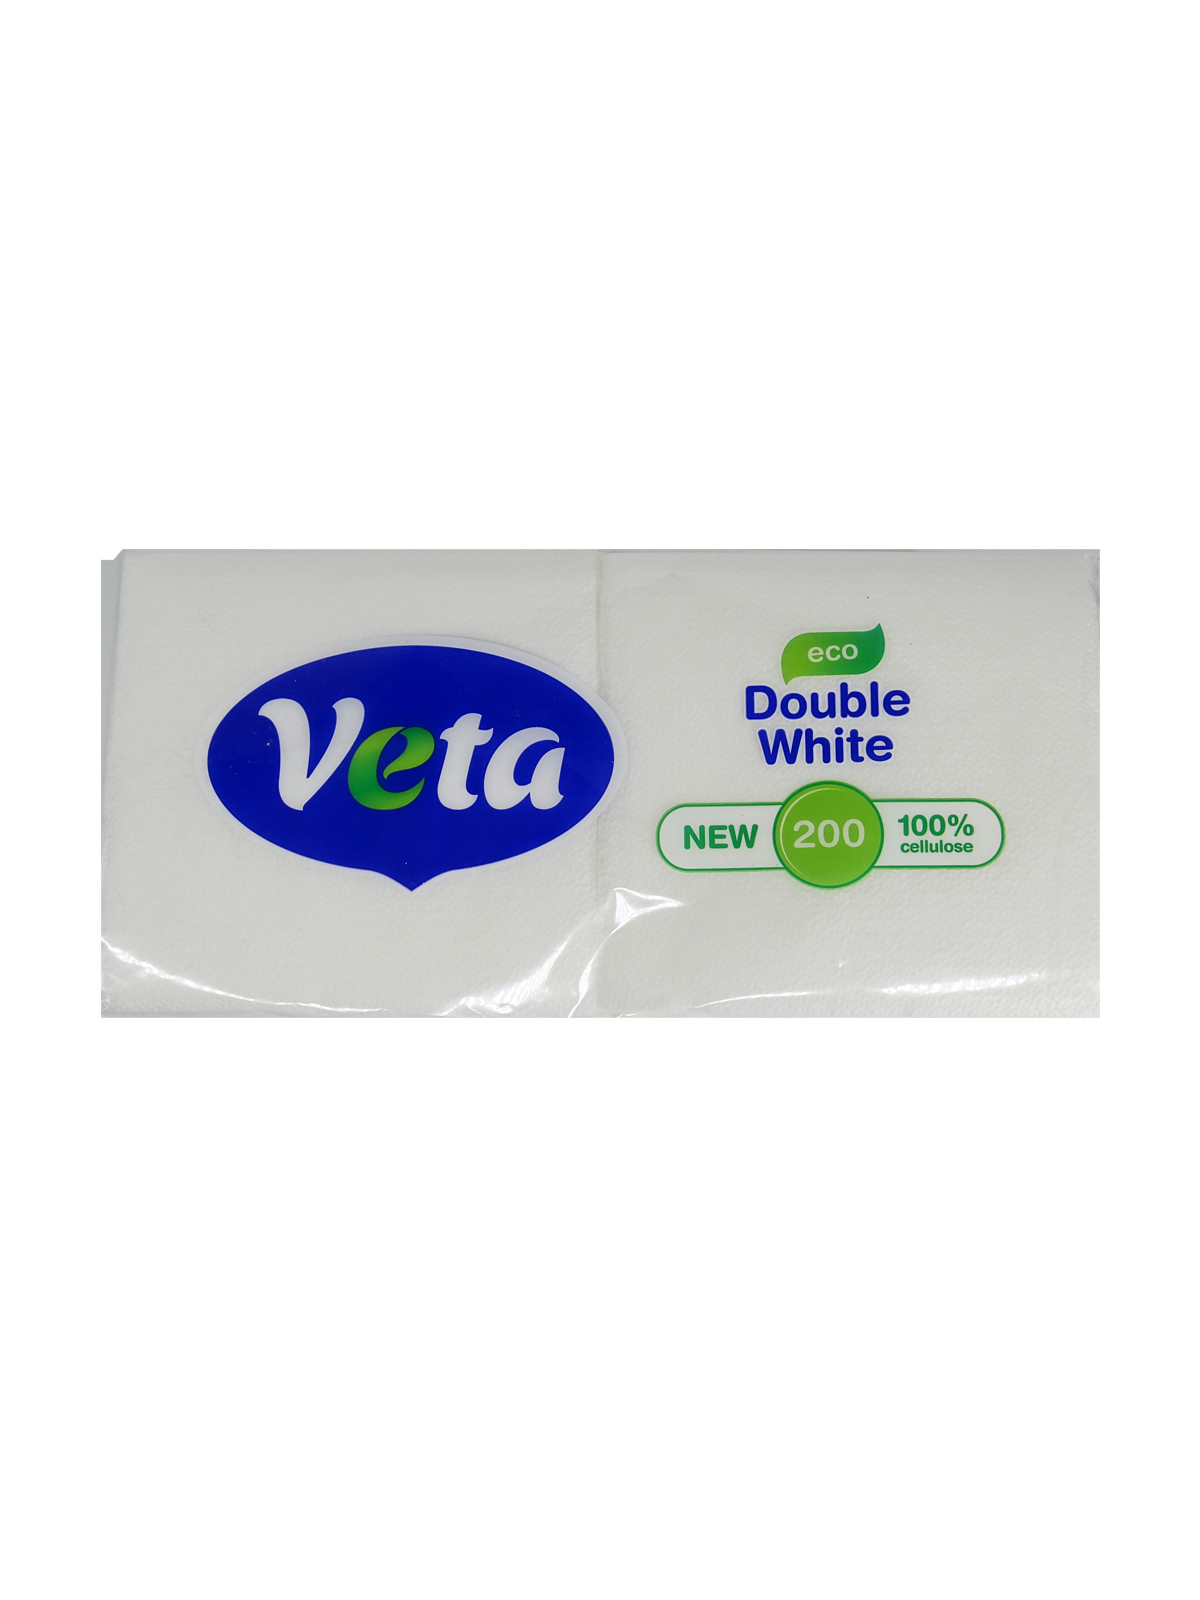 Салфетки бумажные VETA DOUBLE WHITE ECO 100% целлюлоза, неокрашенные, по 200 шт. в упаковке